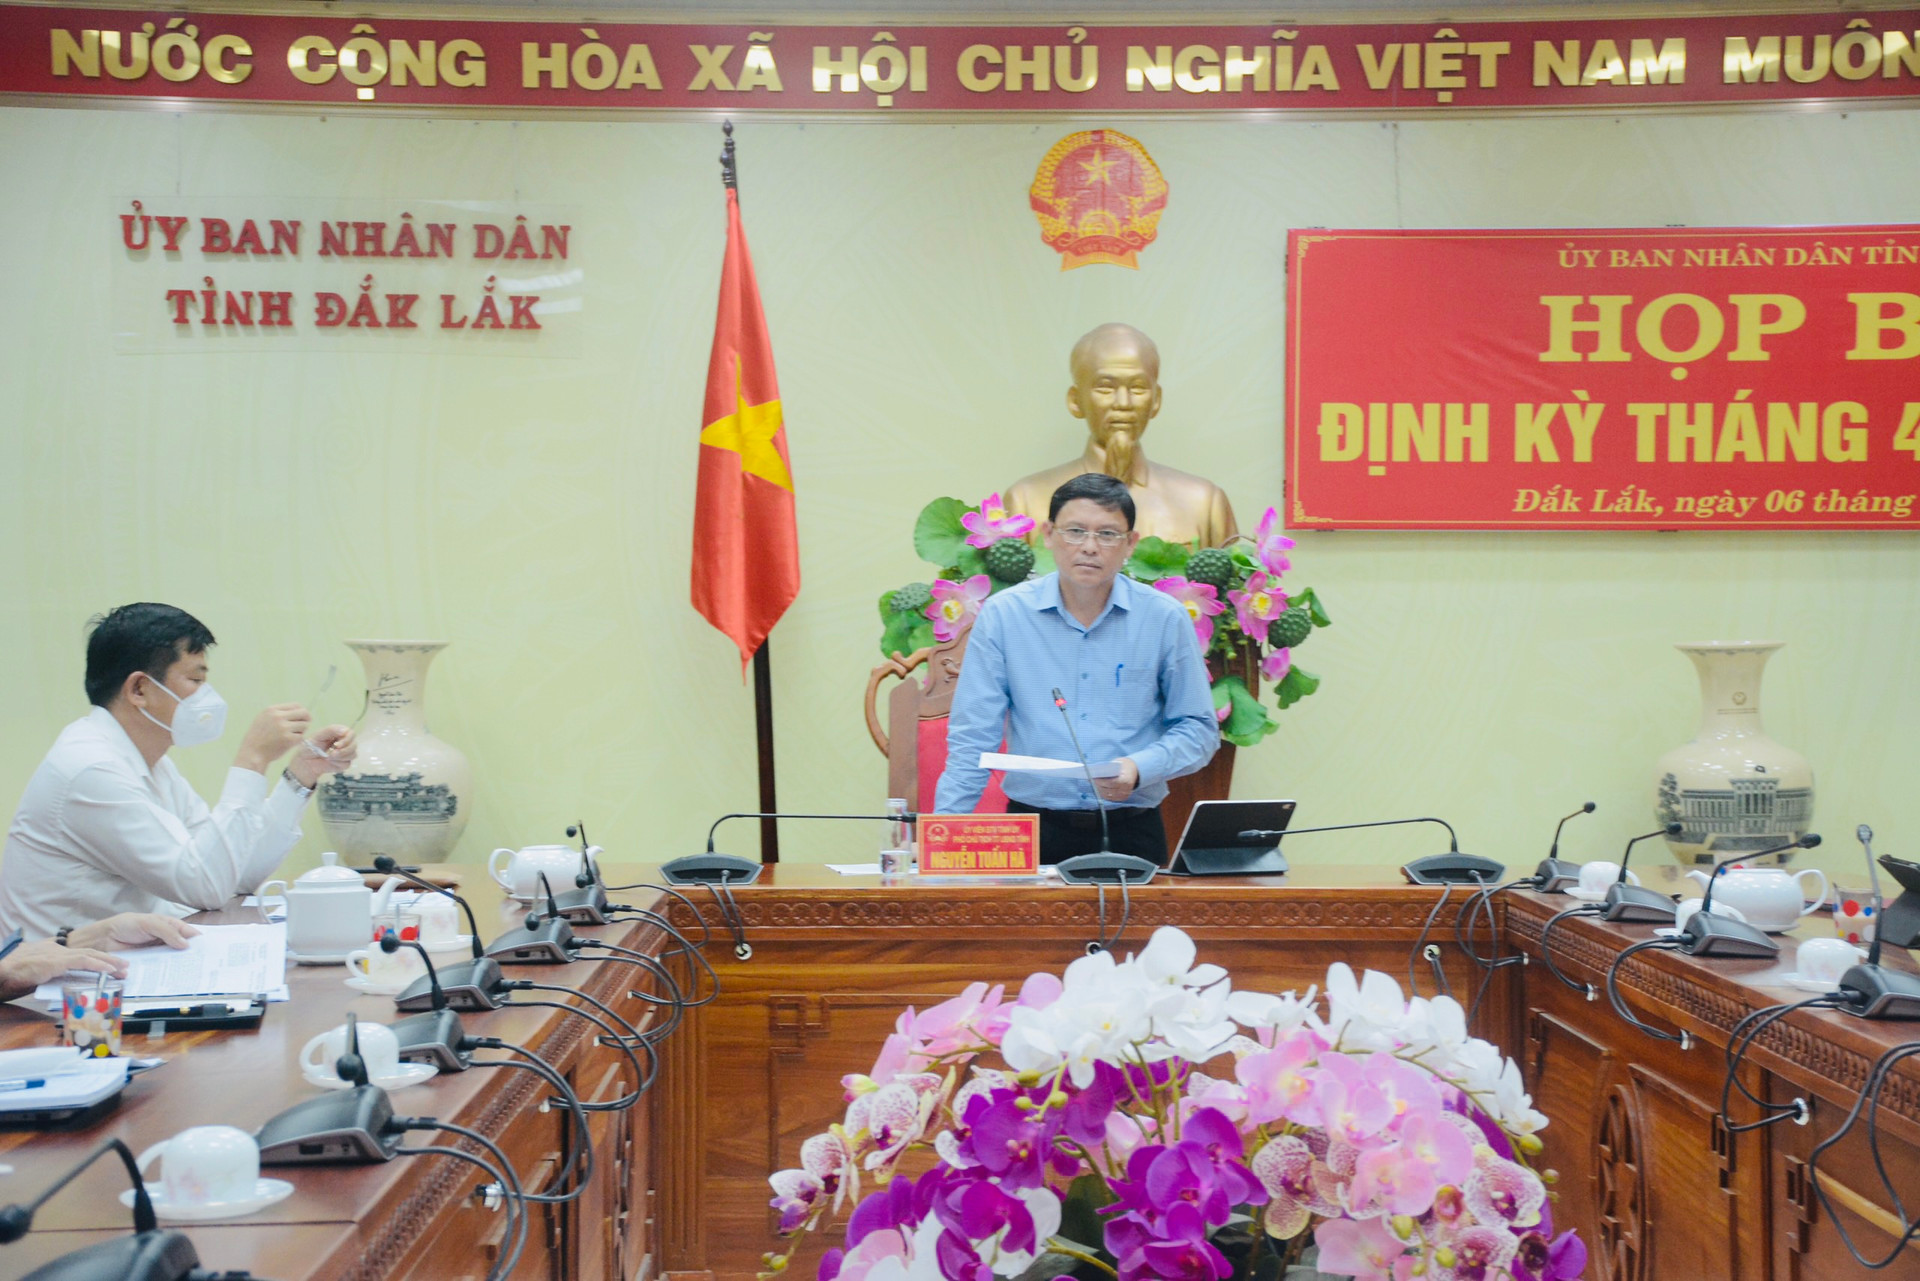 ông Nguyễn Tuấn Hà, Phó Chủ tịch thường trực UBND tỉnh Đắk Lắk, chủ trì buổi họp báo.